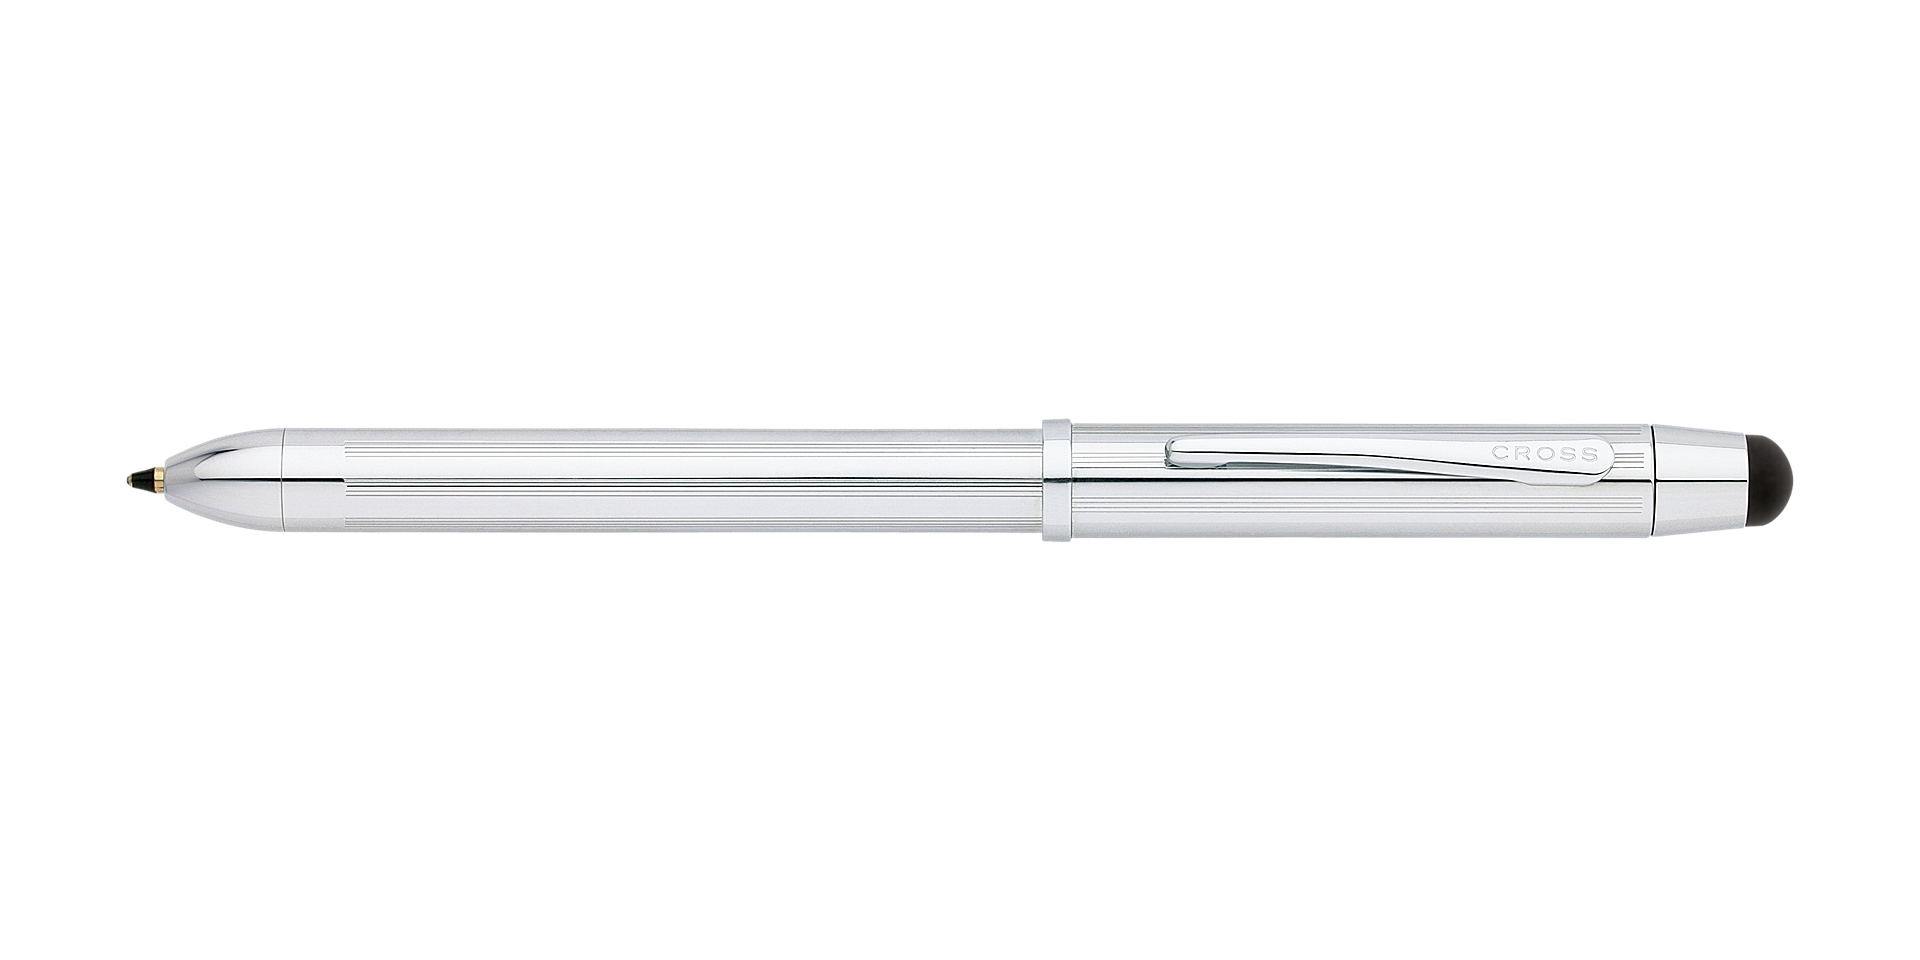  Tech3 Lustrous Chrome Multi-function pen